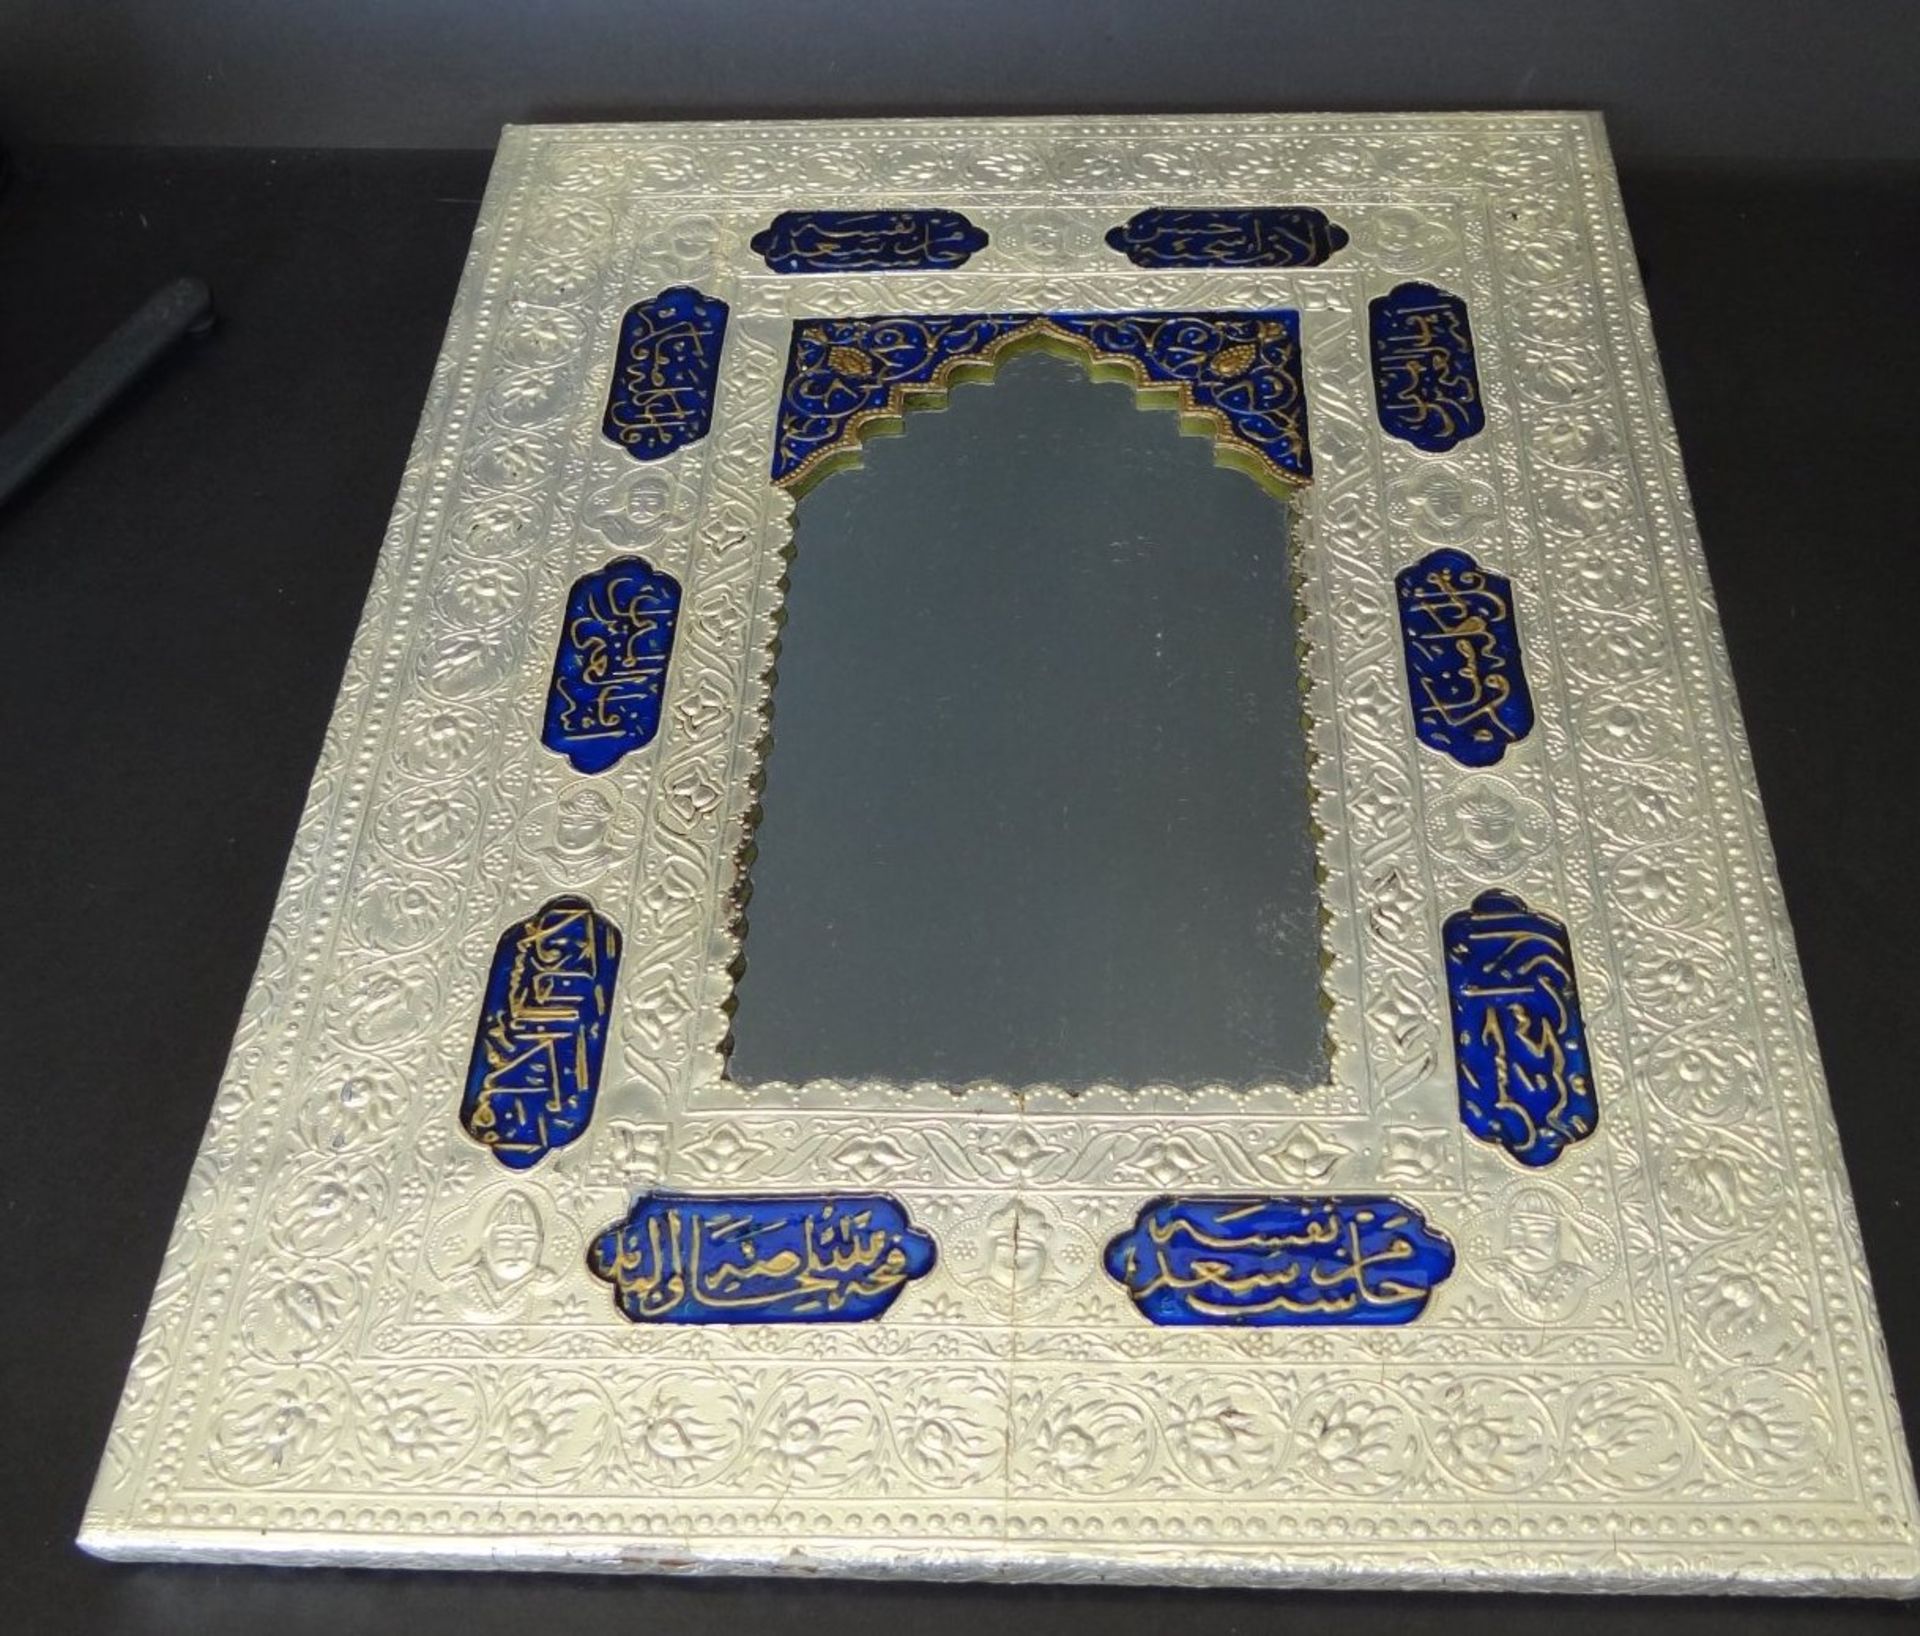 Wandspiegel, geprägtes Silber mit emaillierten Feldern, diese arabisch beschriftet, leichte - Bild 2 aus 10